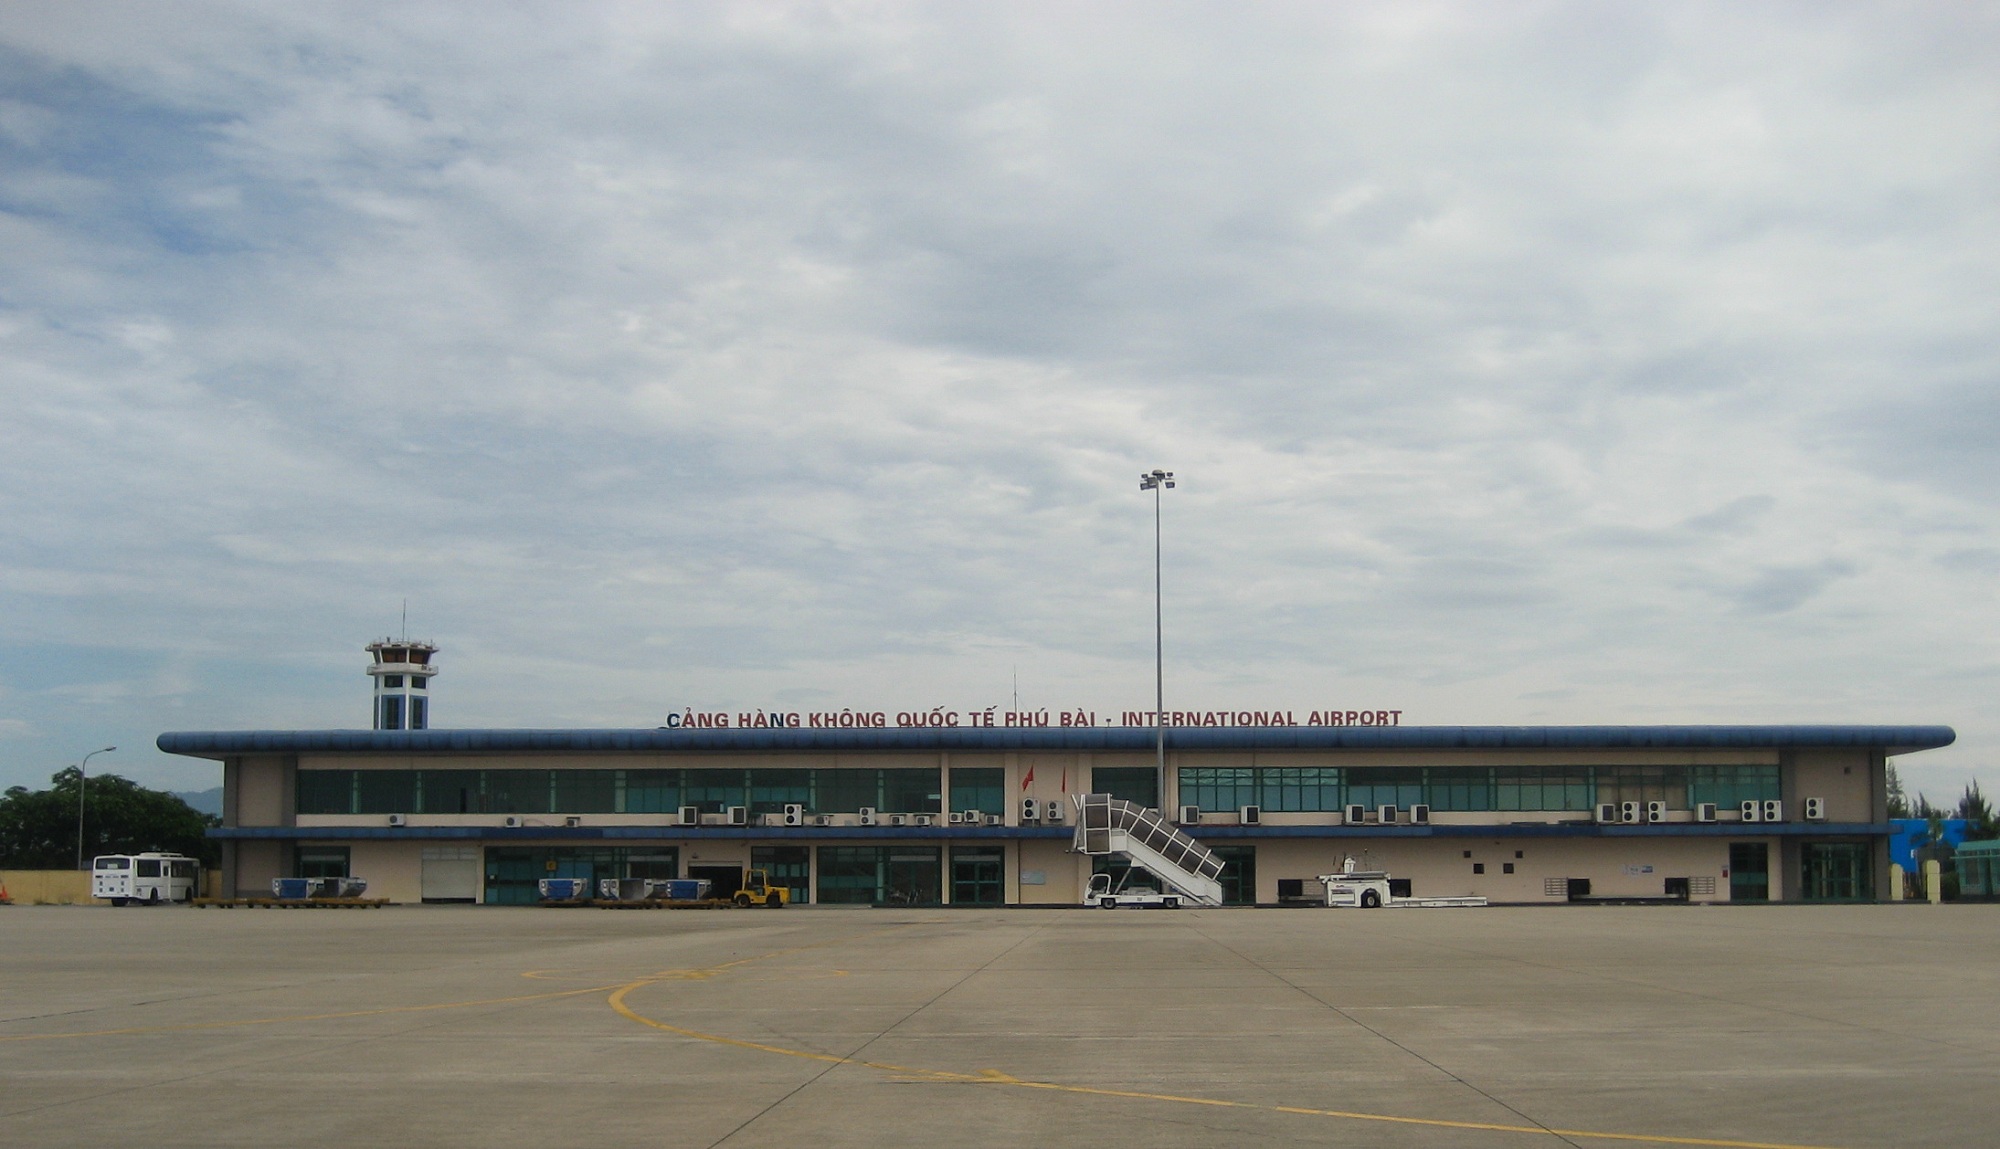 Phu Bai Airport - Hue